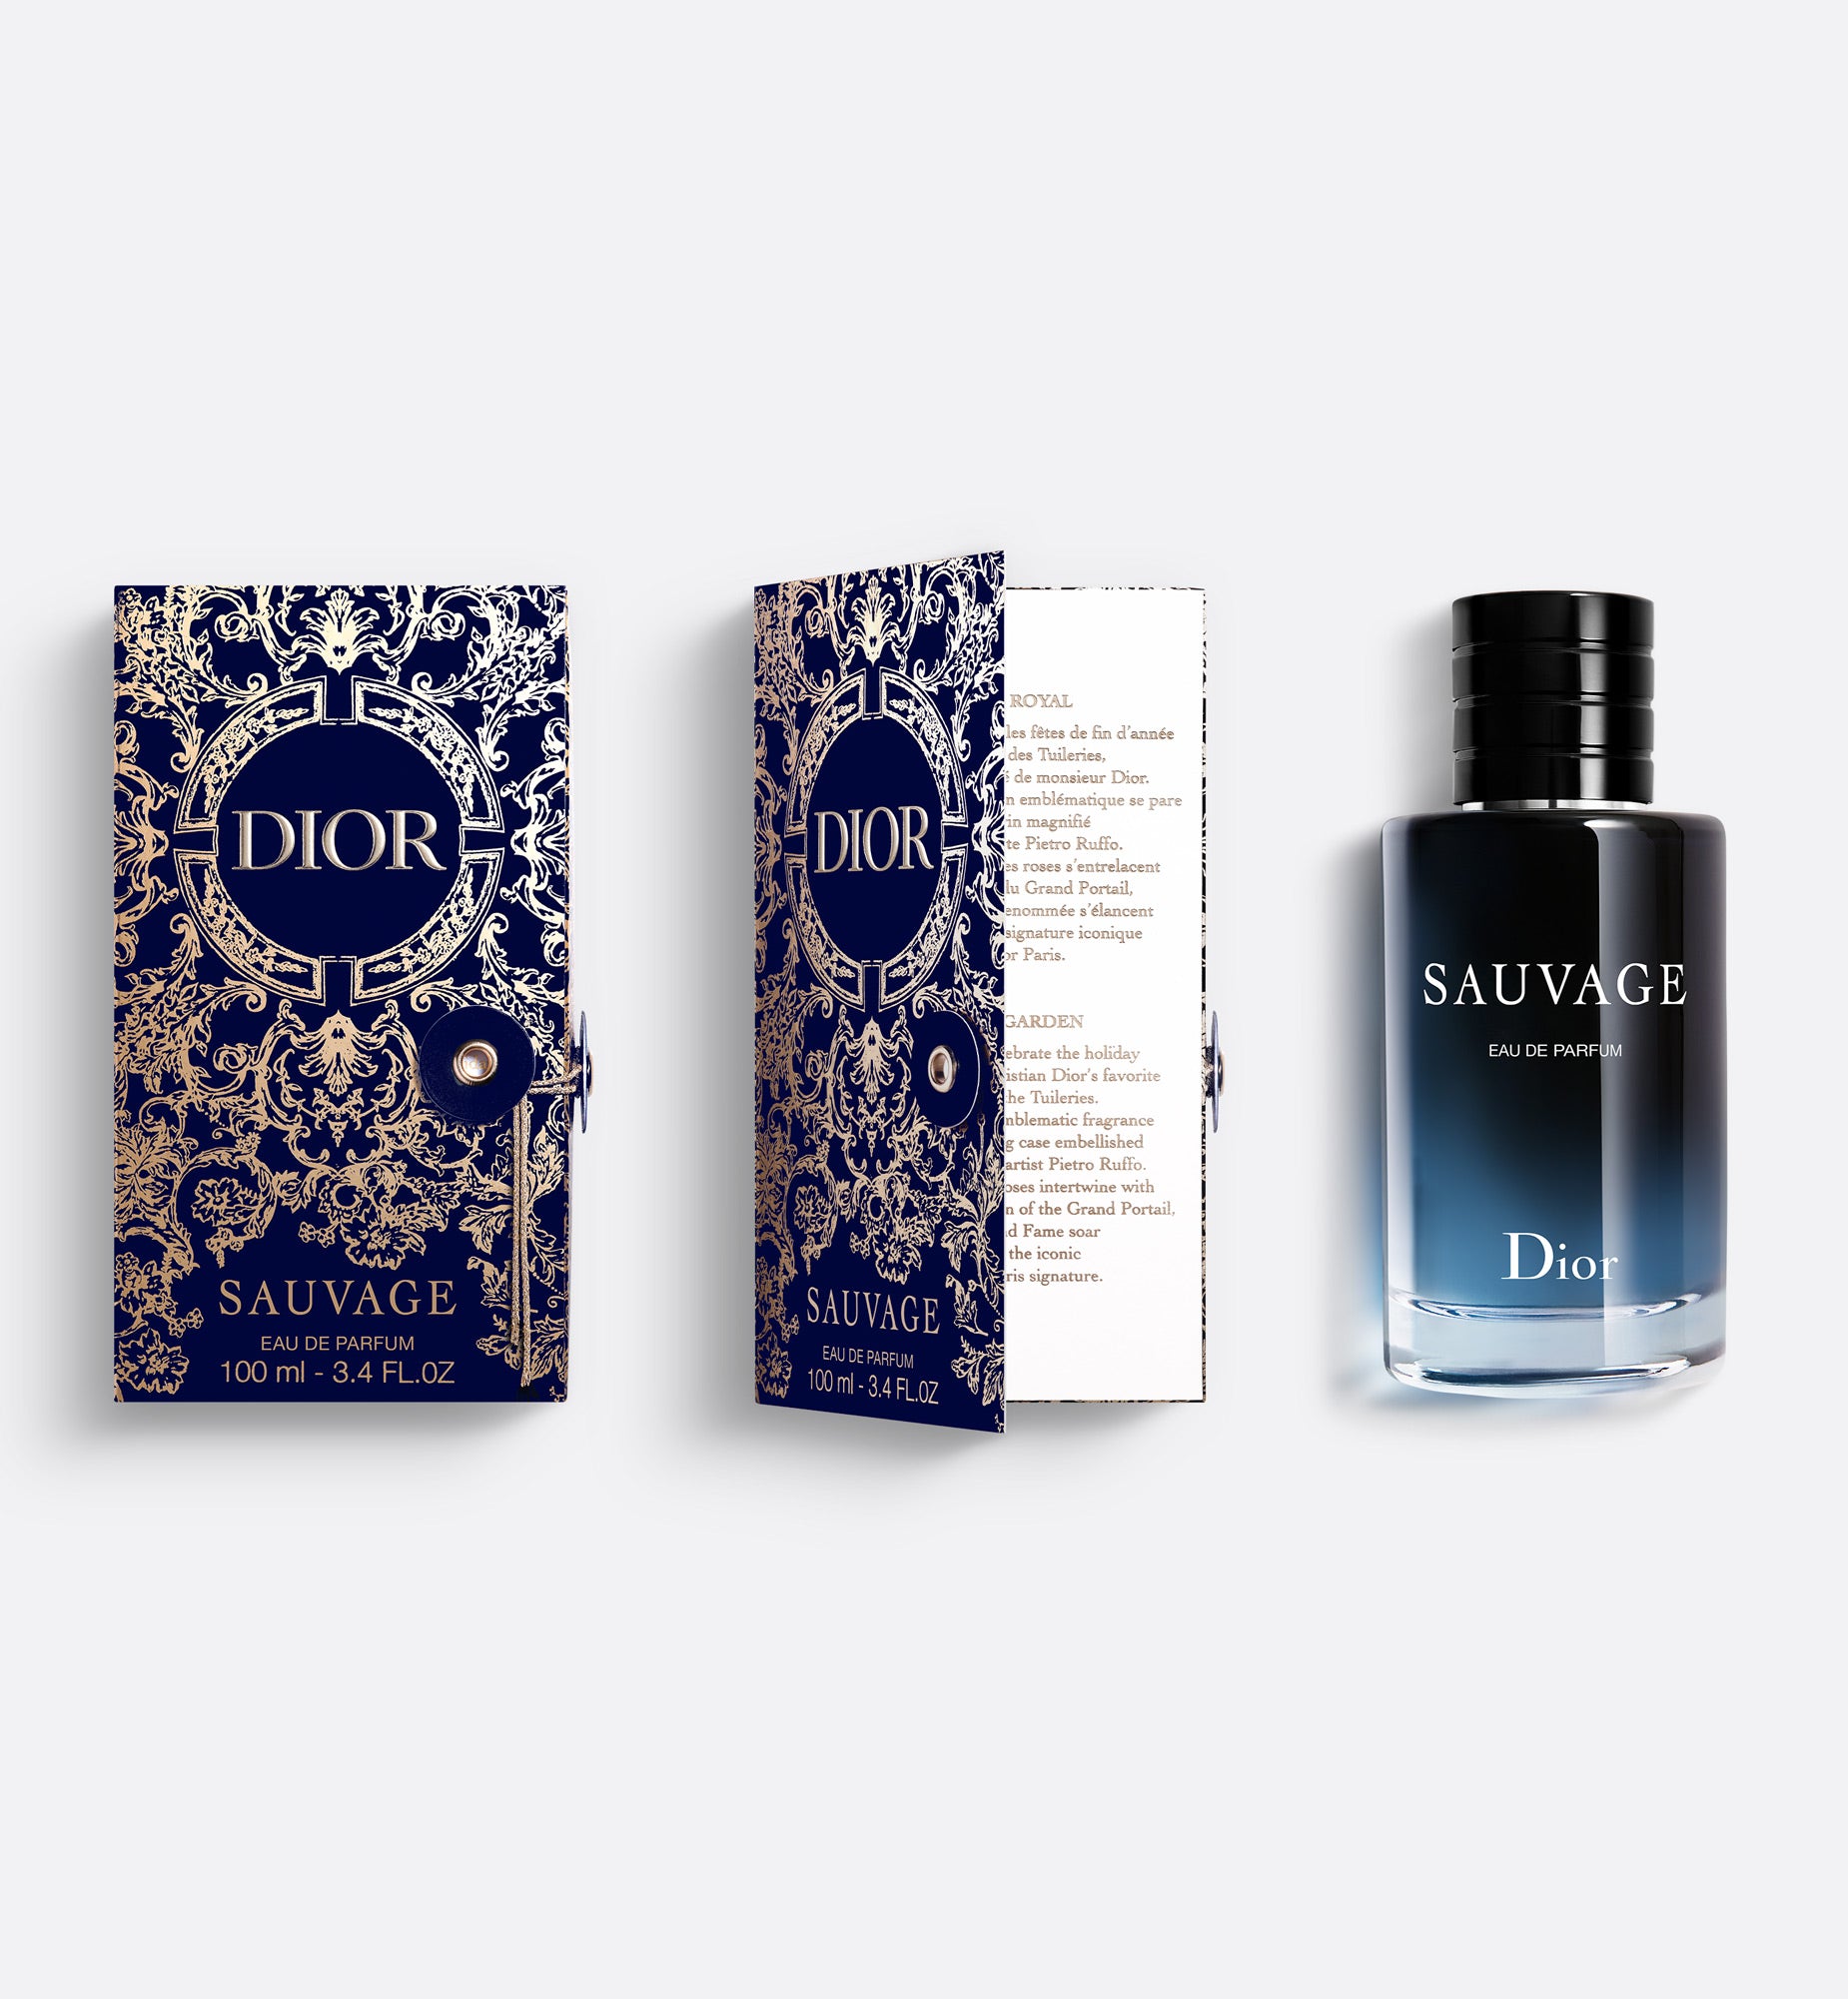 Sauvage Eau de Parfum - Limited Edition | Eau de Parfum - Citrus and Vanilla Notes - Gift Case